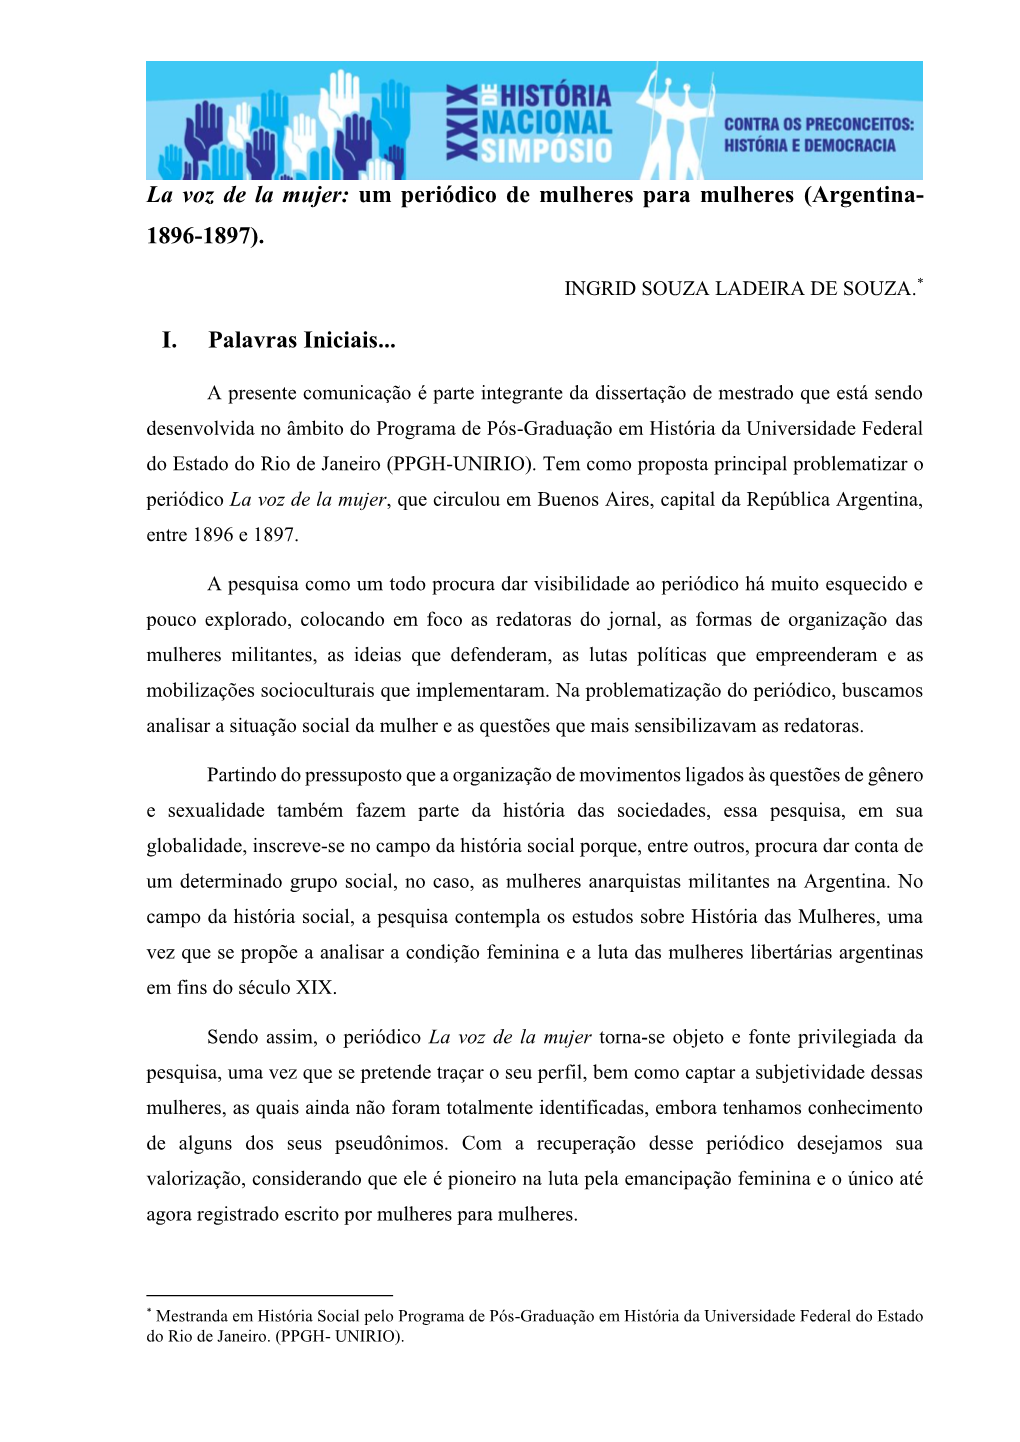 La Voz De La Mujer: Um Periódico De Mulheres Para Mulheres (Argentina- 1896-1897). I. Palavras Iniciais